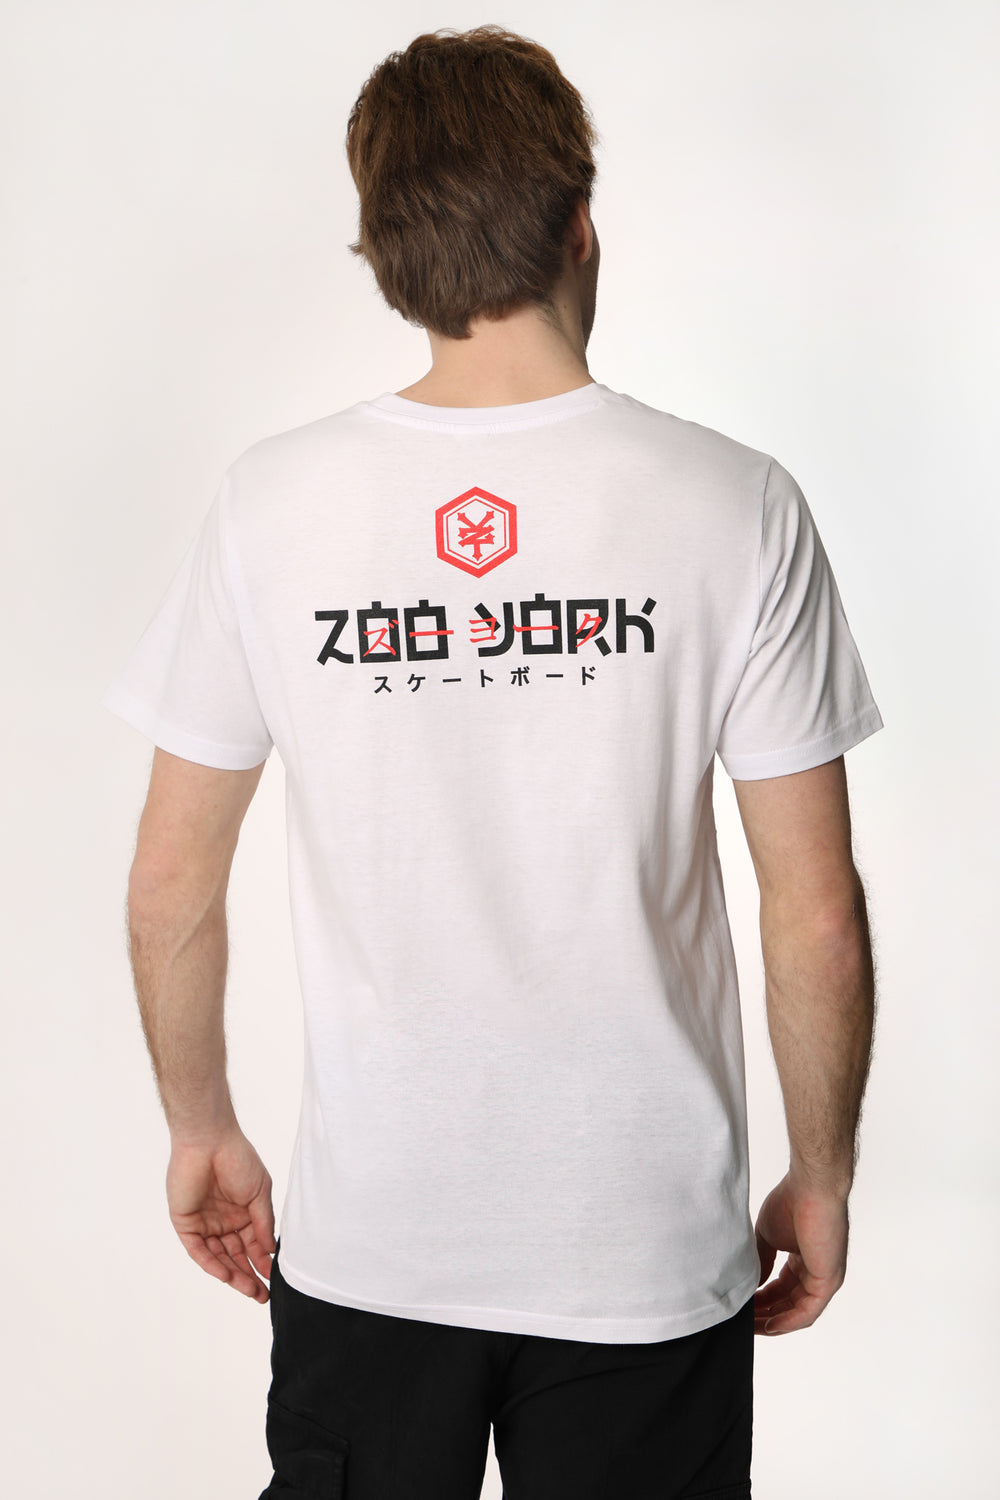 T-Shirt Imprimé Logo Japan Zoo York Homme T-Shirt Imprimé Logo Japan Zoo York Homme